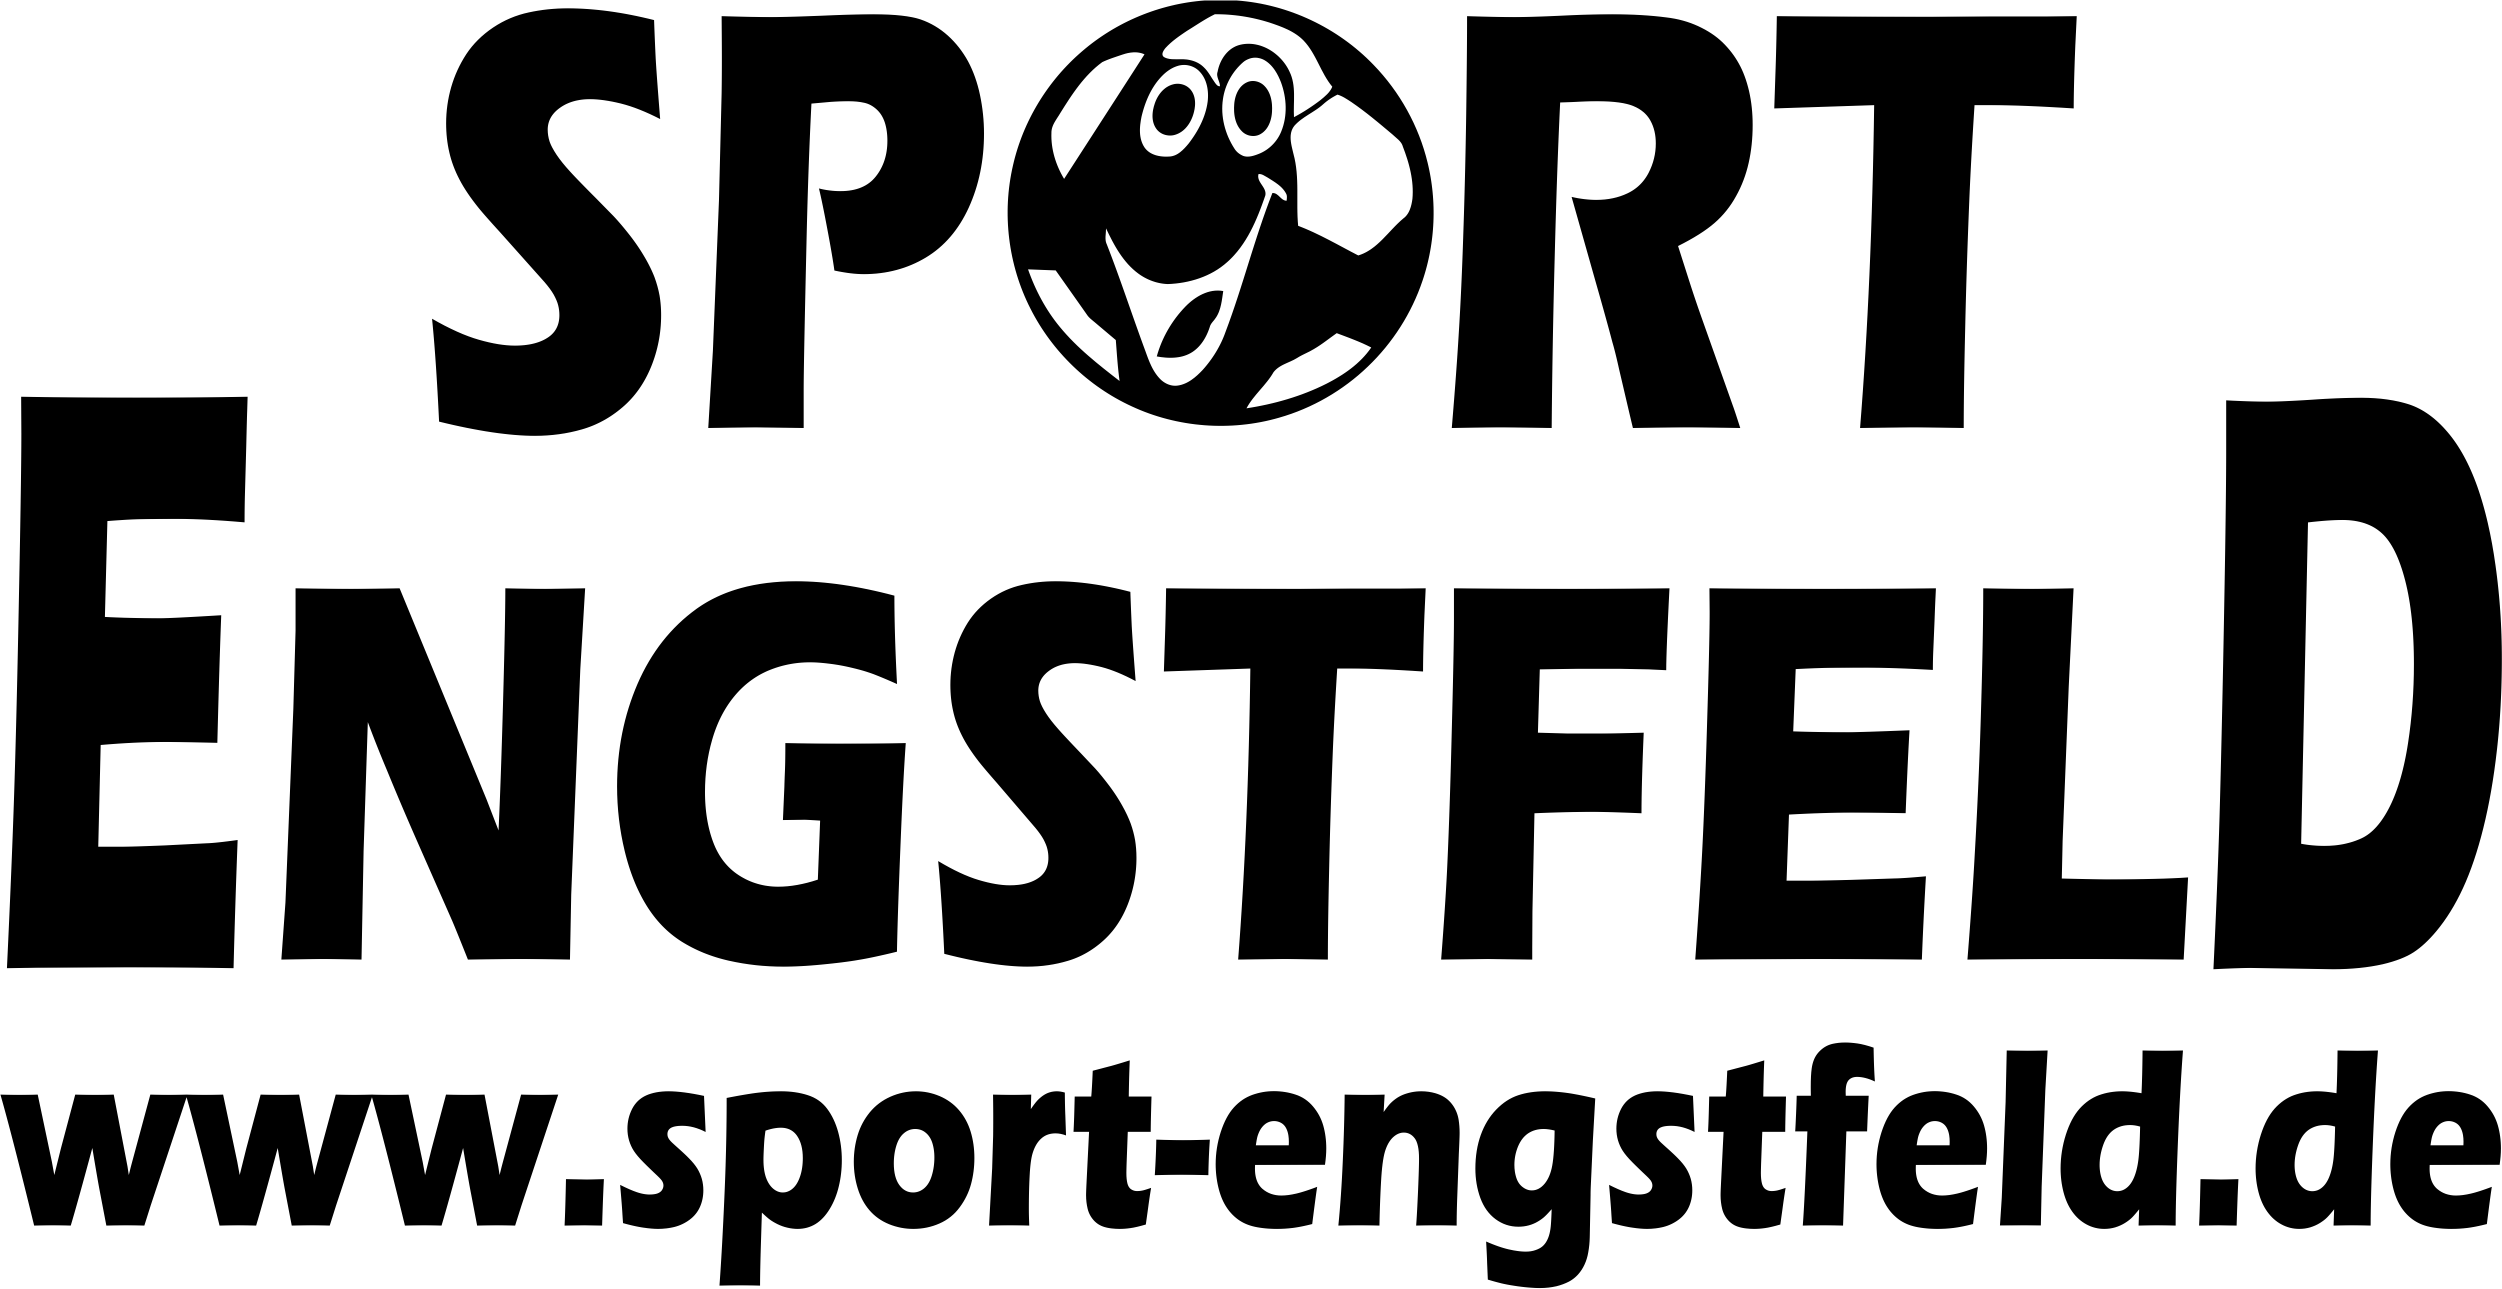 Jsg lennetal Logo 2